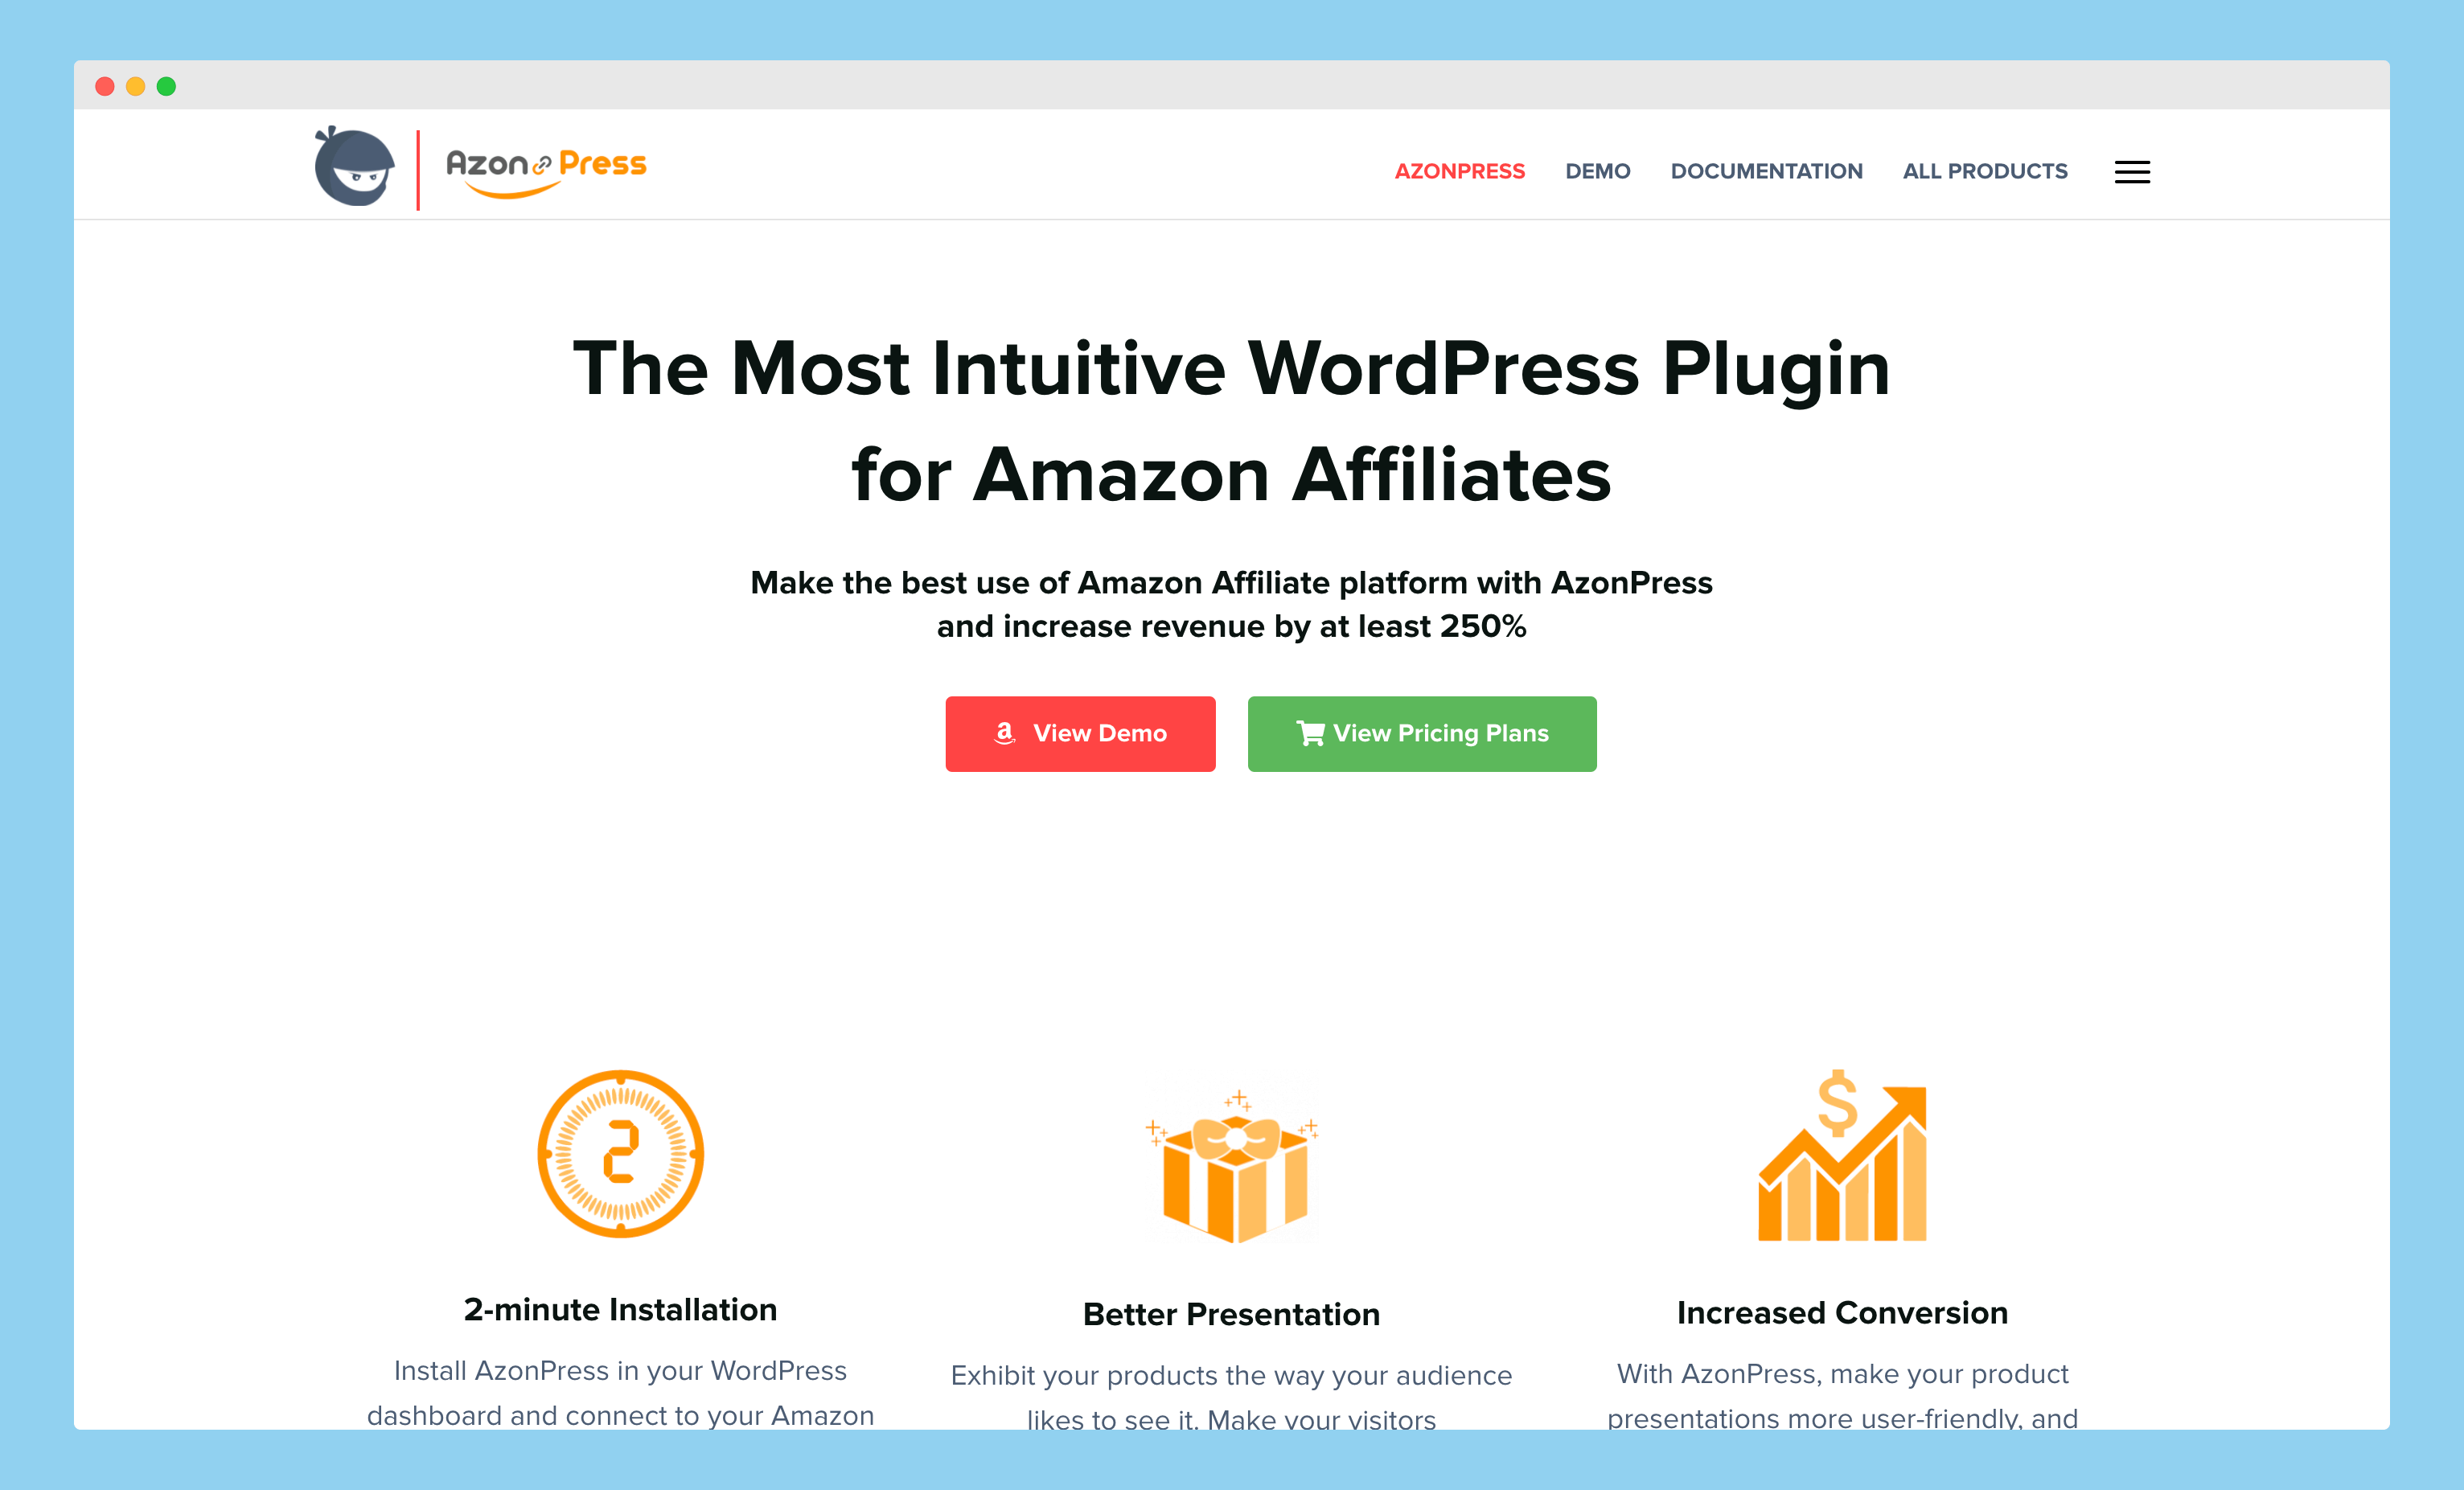 amazon affiliate plugin, amazon affiliate wordpress plugins, amazon affiliate wp plugin, best amazon affiliate plugins, best amazon affiliate wordpress plugins